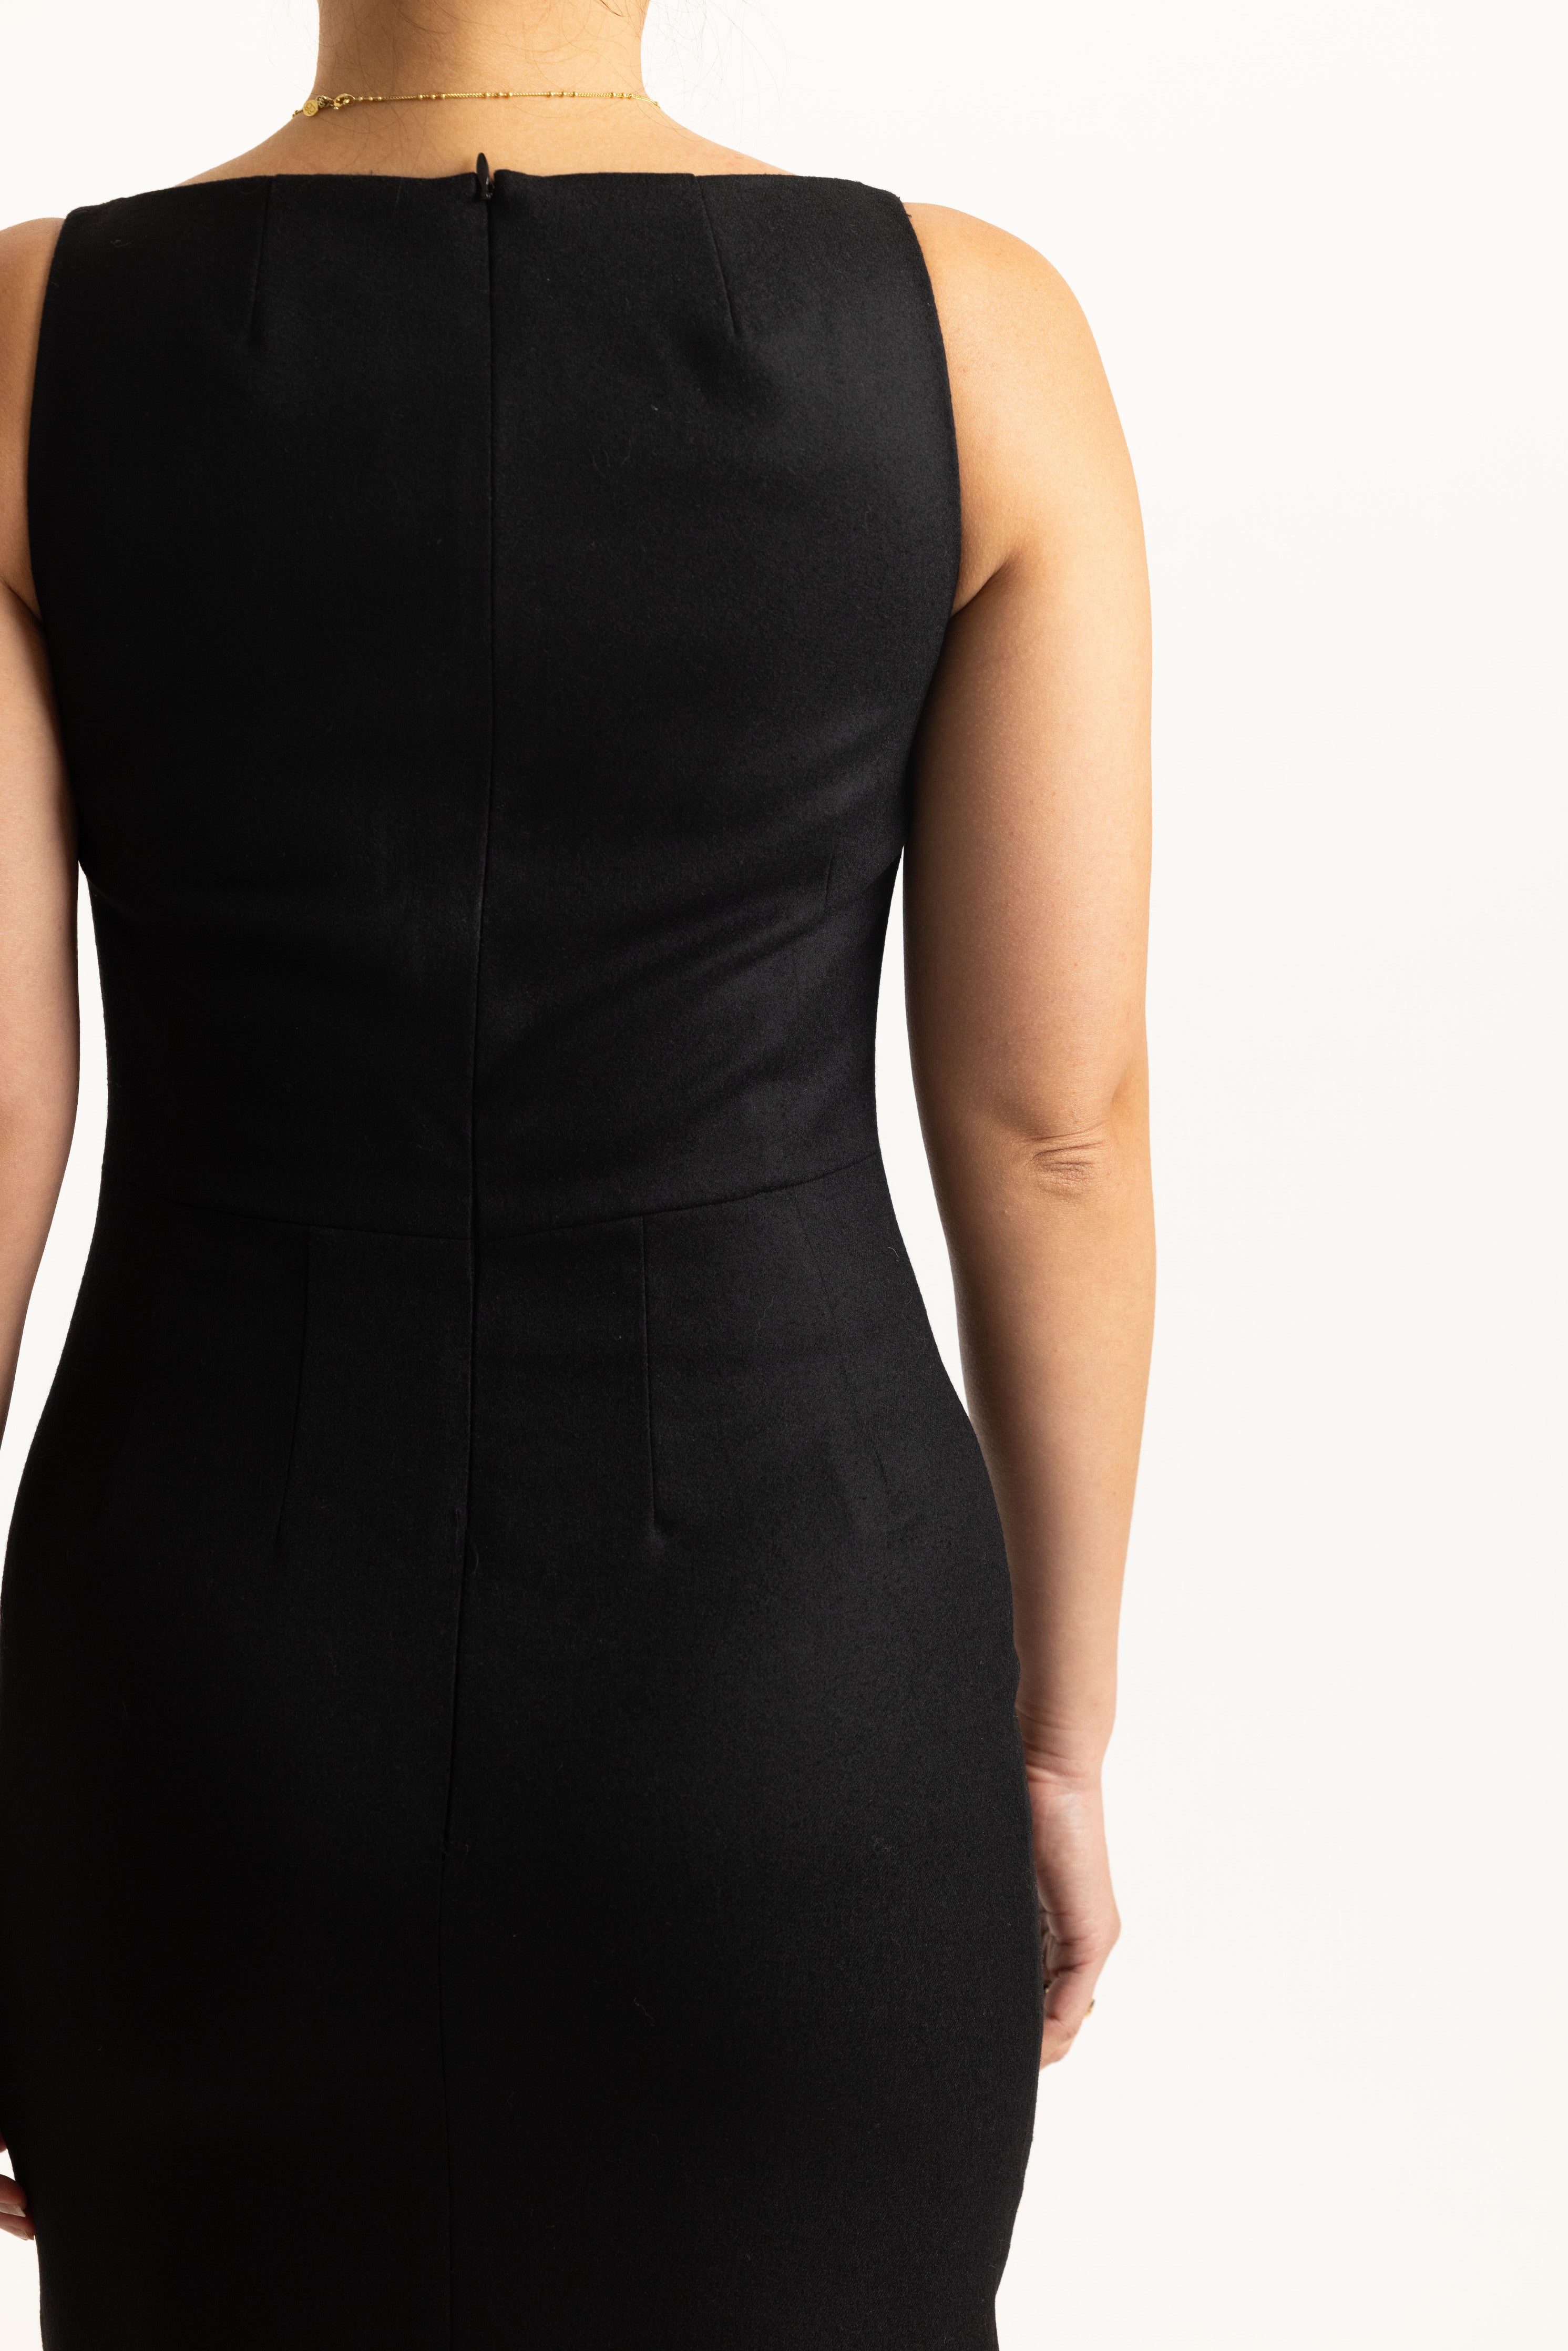 90's Midi Dress in Black - back details